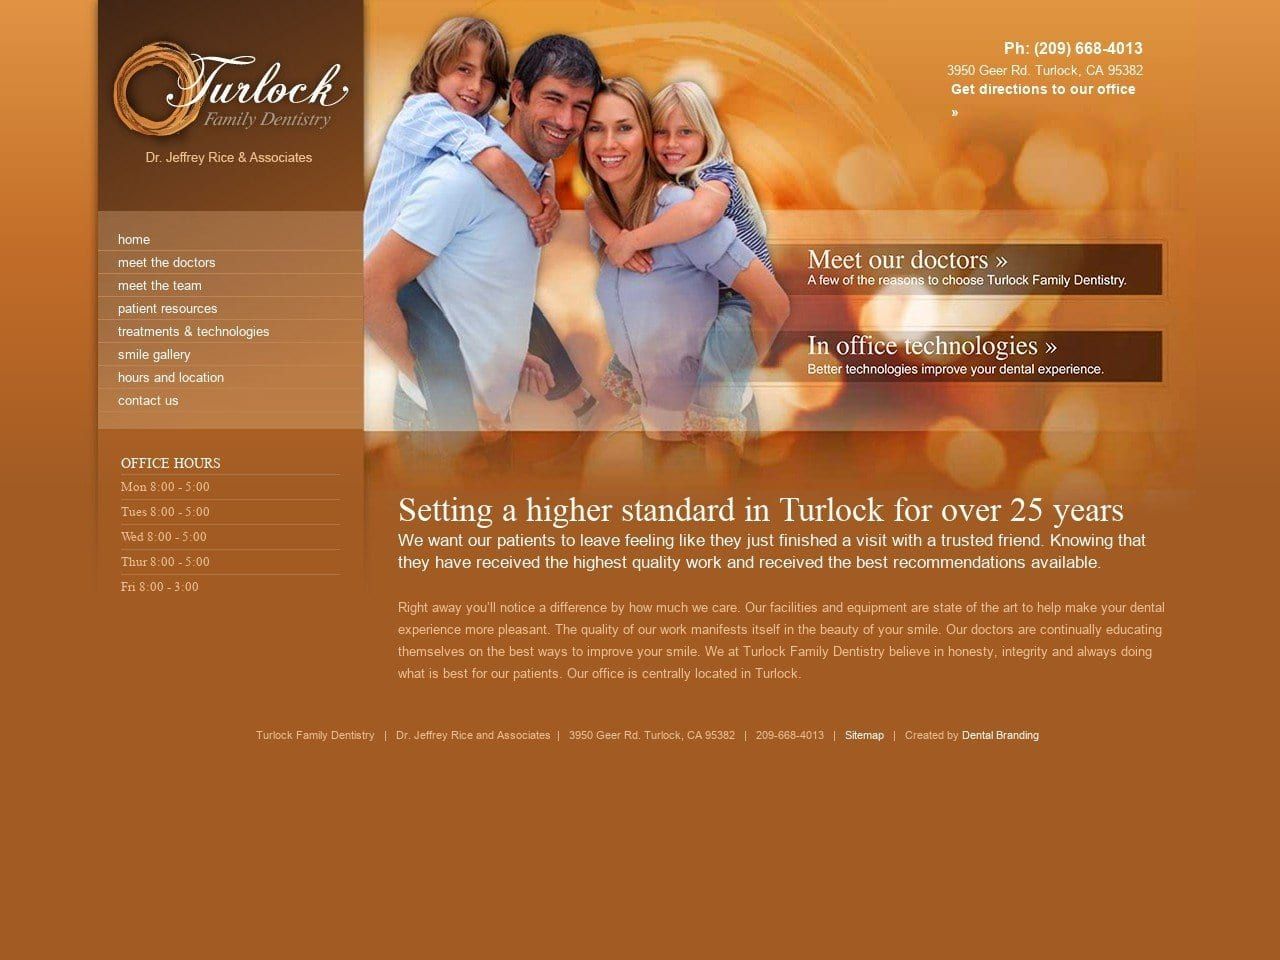 Turlock Family Dentistry Vallarine Alan DDS Website Screenshot from turlockfamilydentistry.com